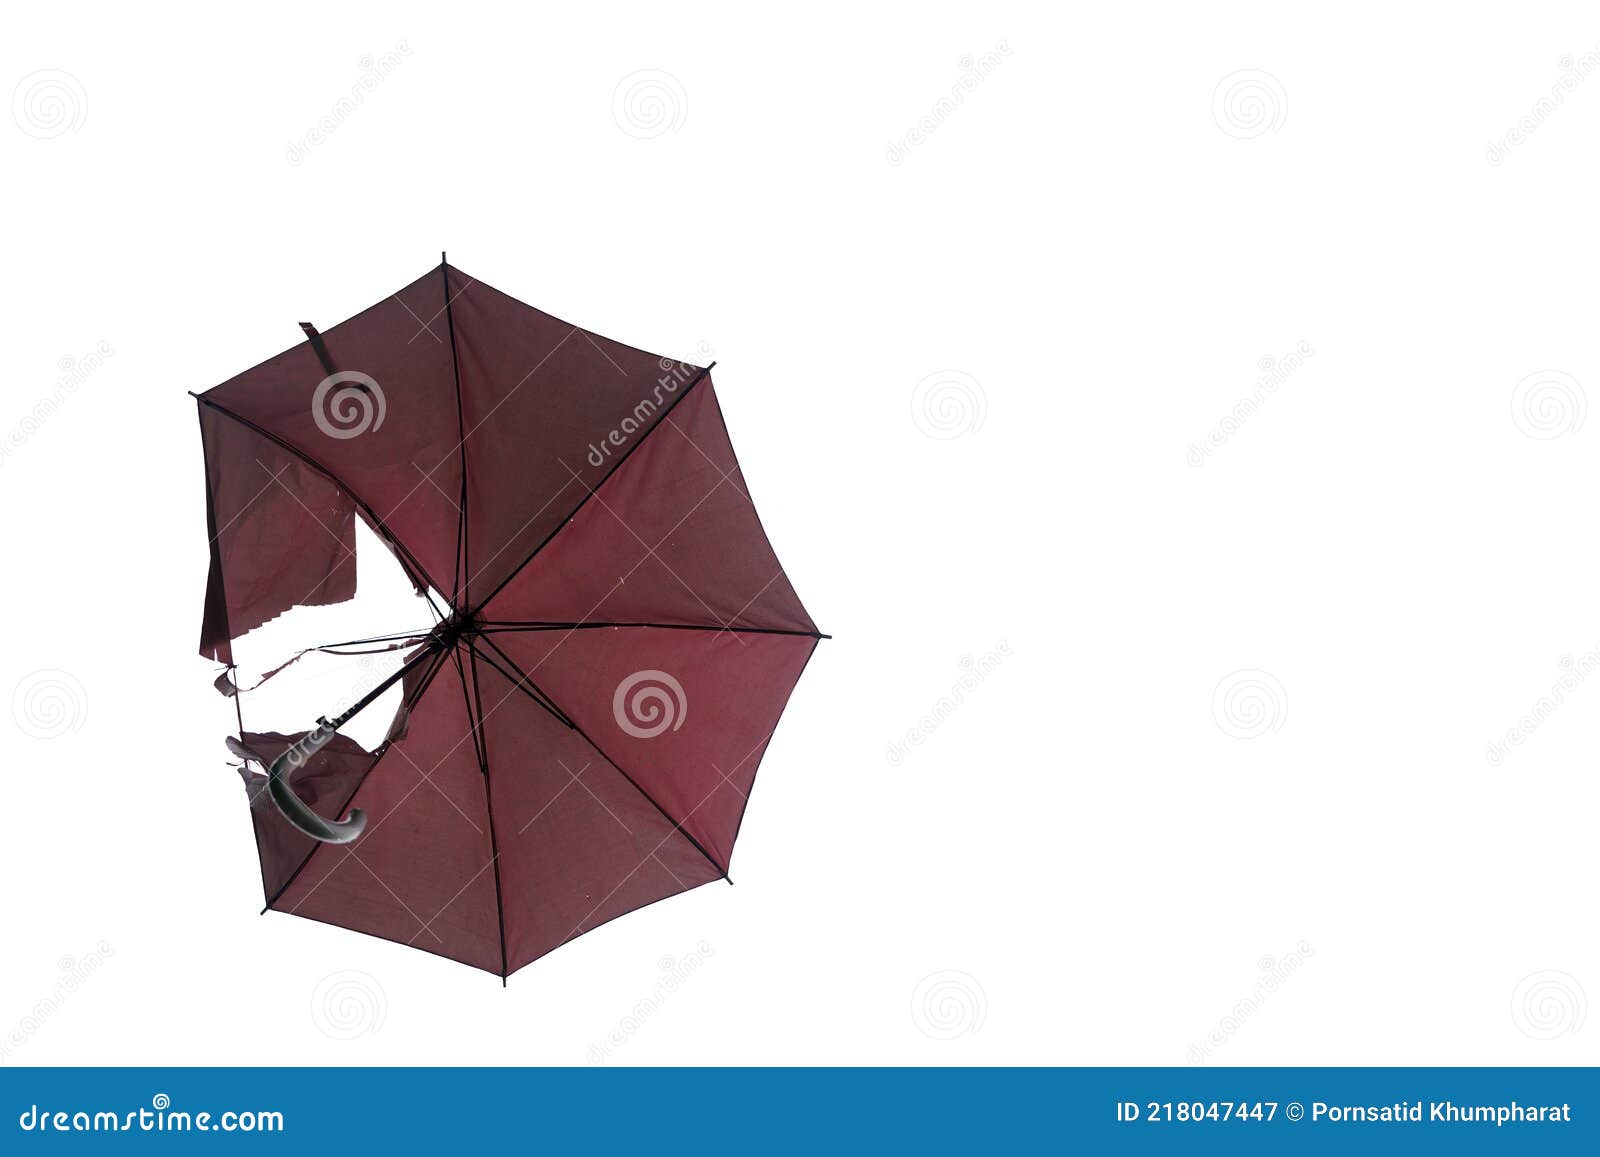 Kabelbaan Direct Ambitieus Kapotte Paraplu Op Witte Achtergrond Stock Afbeelding - Image of seizoen,  nave: 218047447